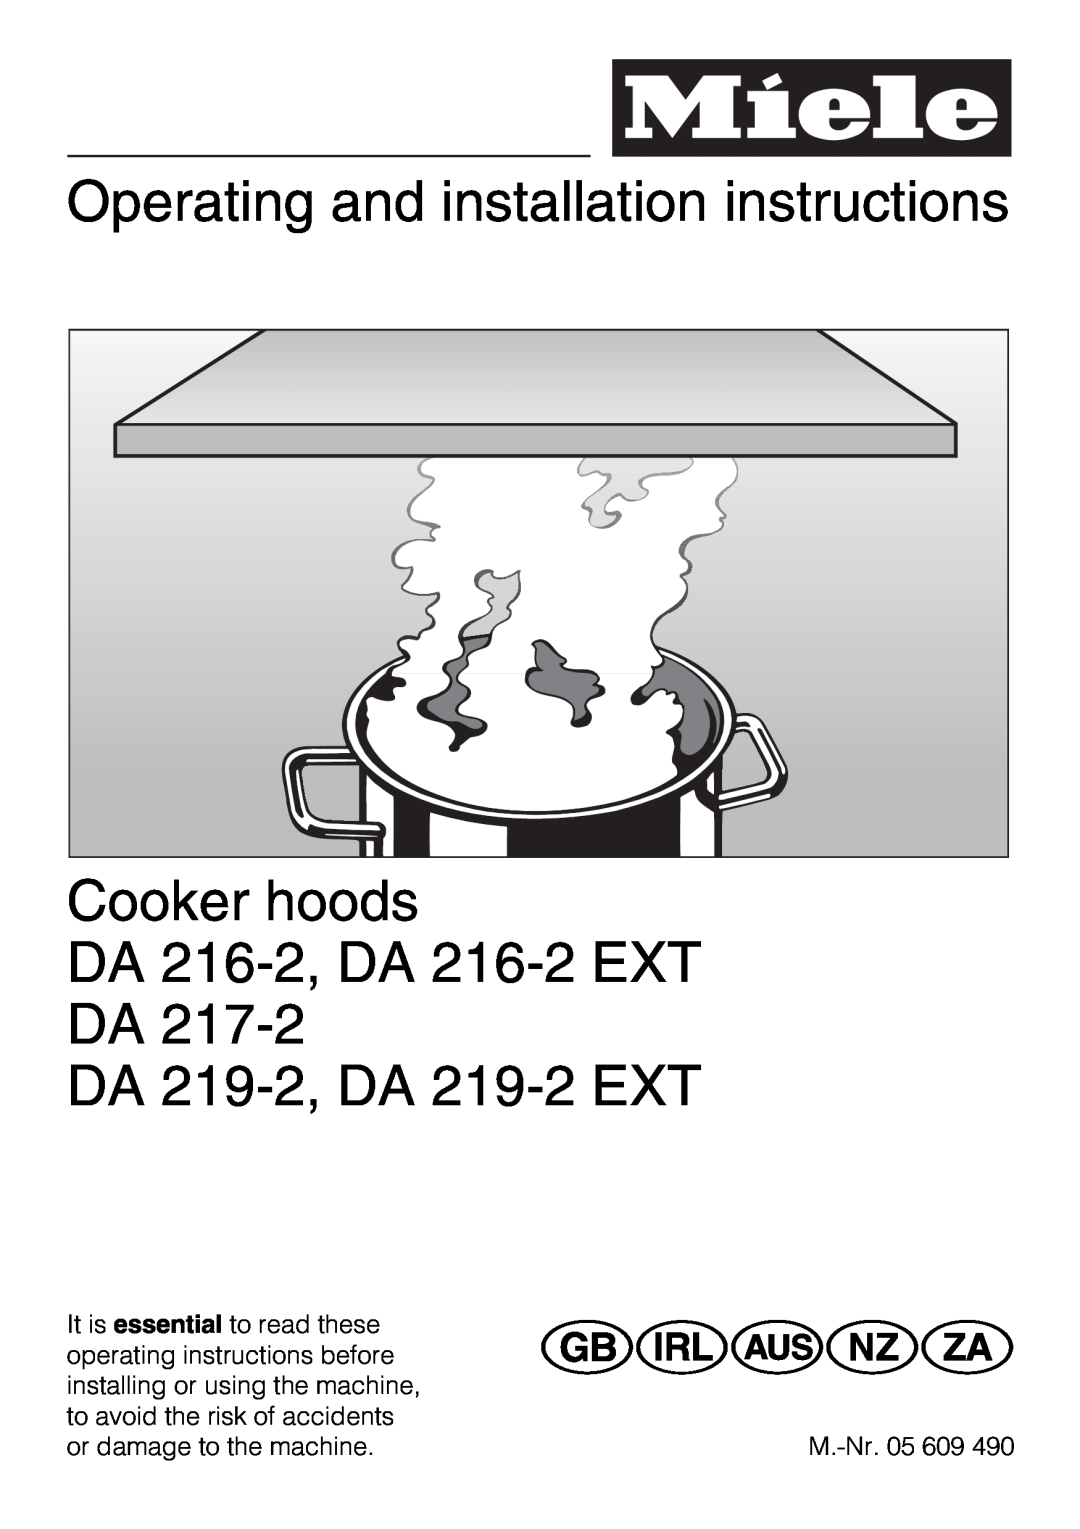 Miele DA 216-2 EXT installation instructions Operating and installation instructions, Cooker hoods DA 216-2,DA 216-2EXT DA 